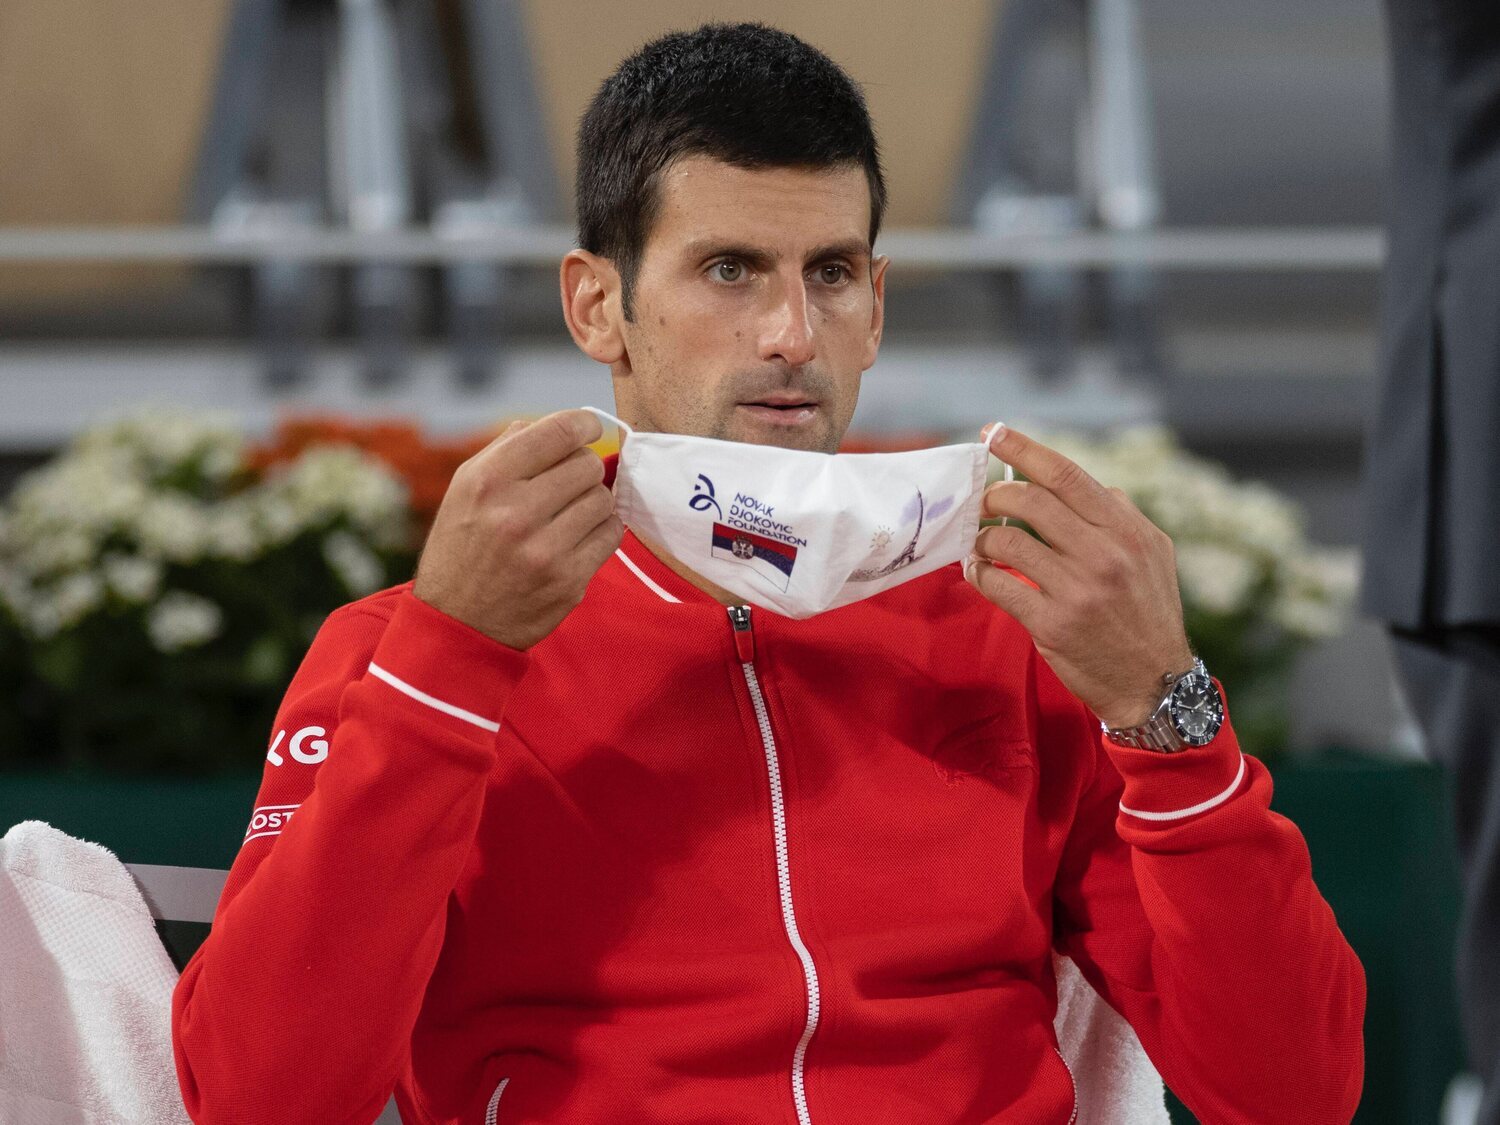 Australia cancela por segunda vez el visado a Djokovic, que podría ser deportado